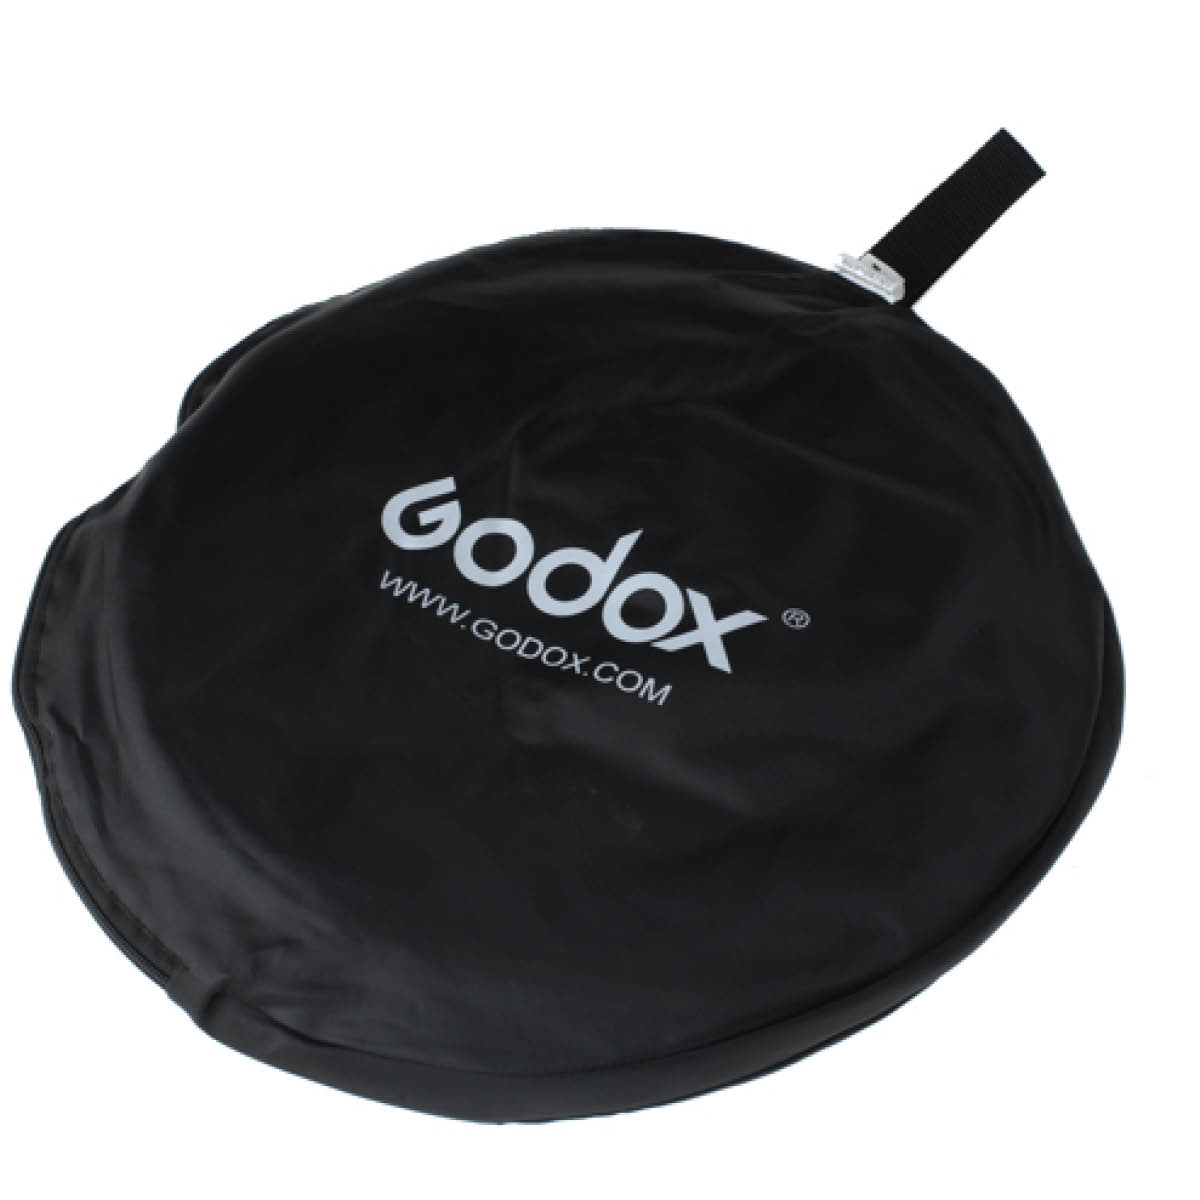 Godox 5 in 1 Soft Gold/Silber/Schwarz/Weiß/Trans 60 cm